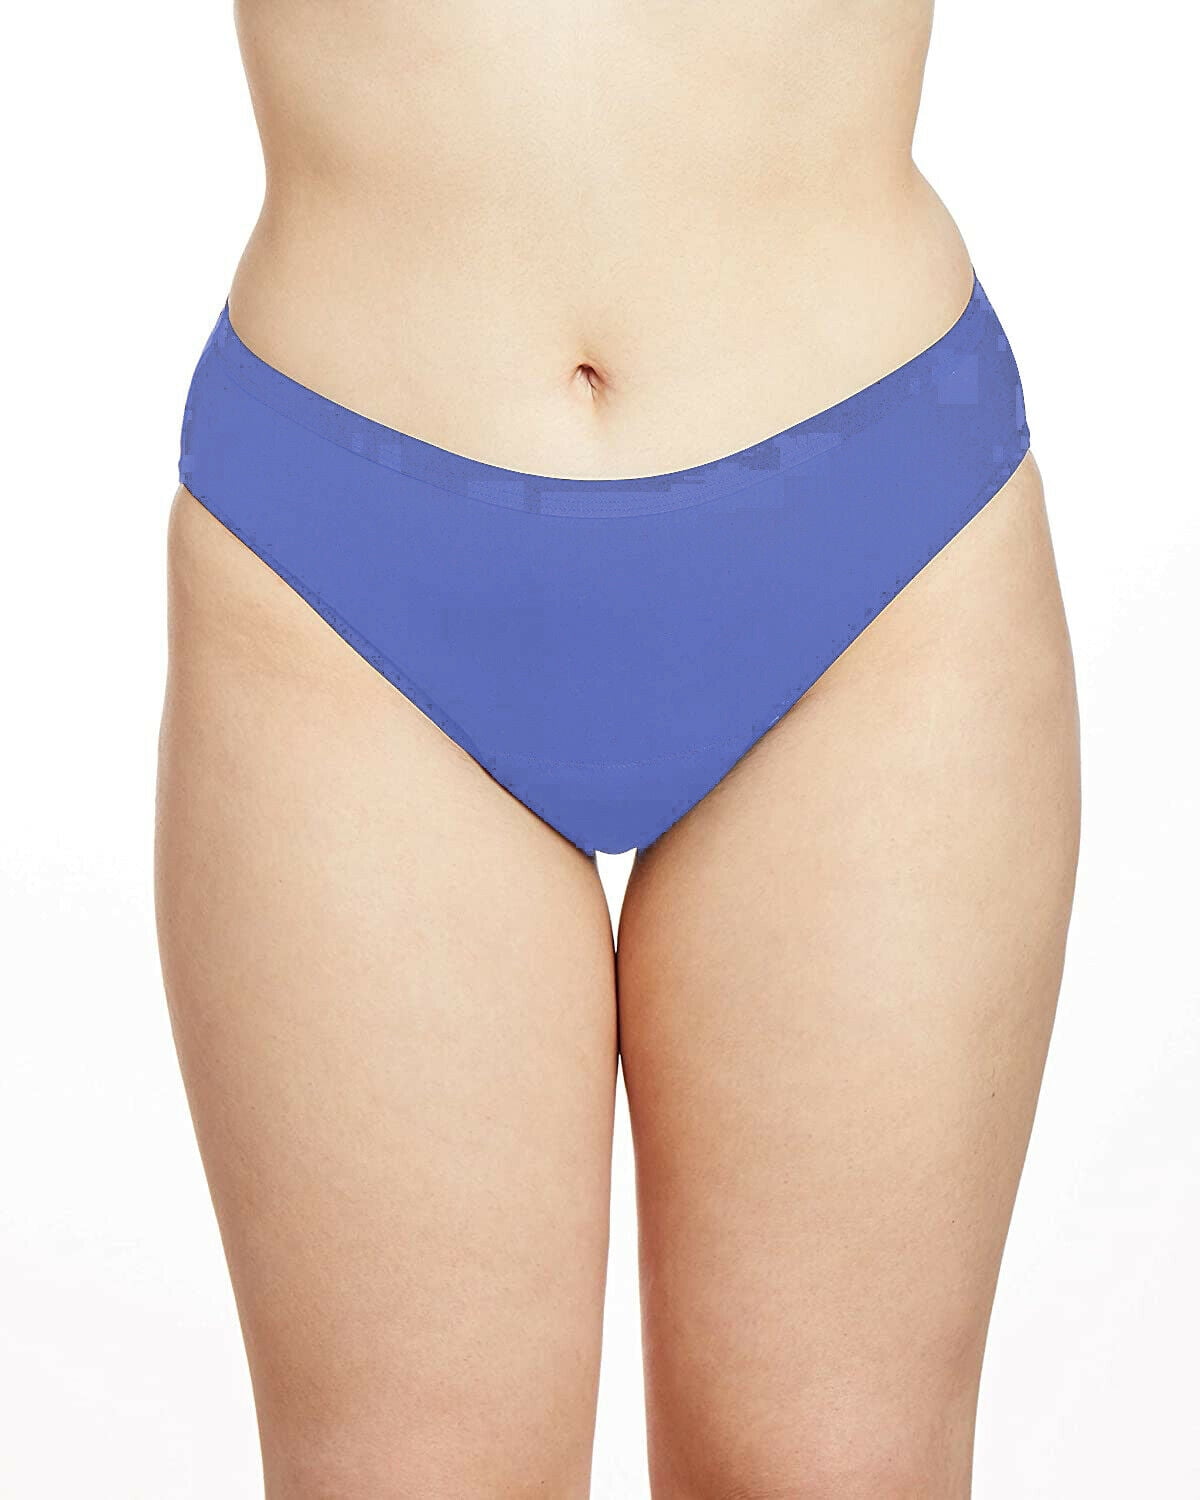 SPEAX by Thinx Hi-Waist Women's Underwear – Leak Proof, Breathable